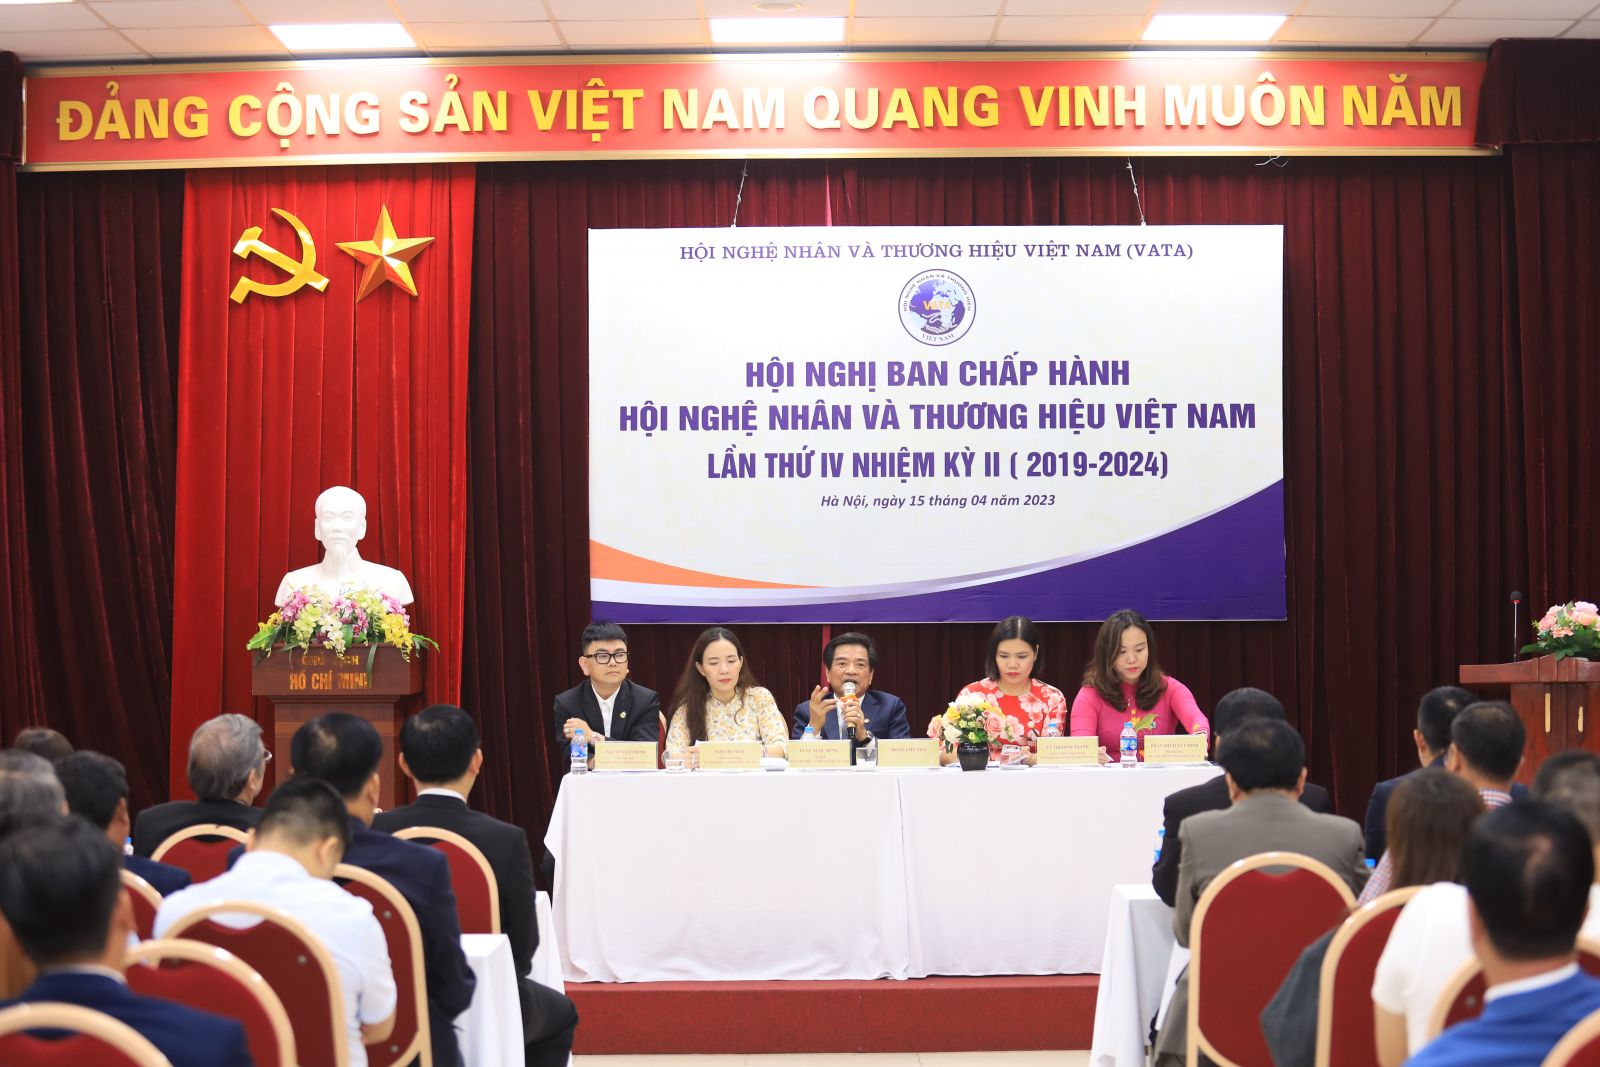 Hội nghị BCH Trung ương Hội Nghệ nhân và Thương hiệu Việt Nam lần thứ IV nhiệm kỳ II (2019-2024) thống nhất nhiều nội dung quan trọng